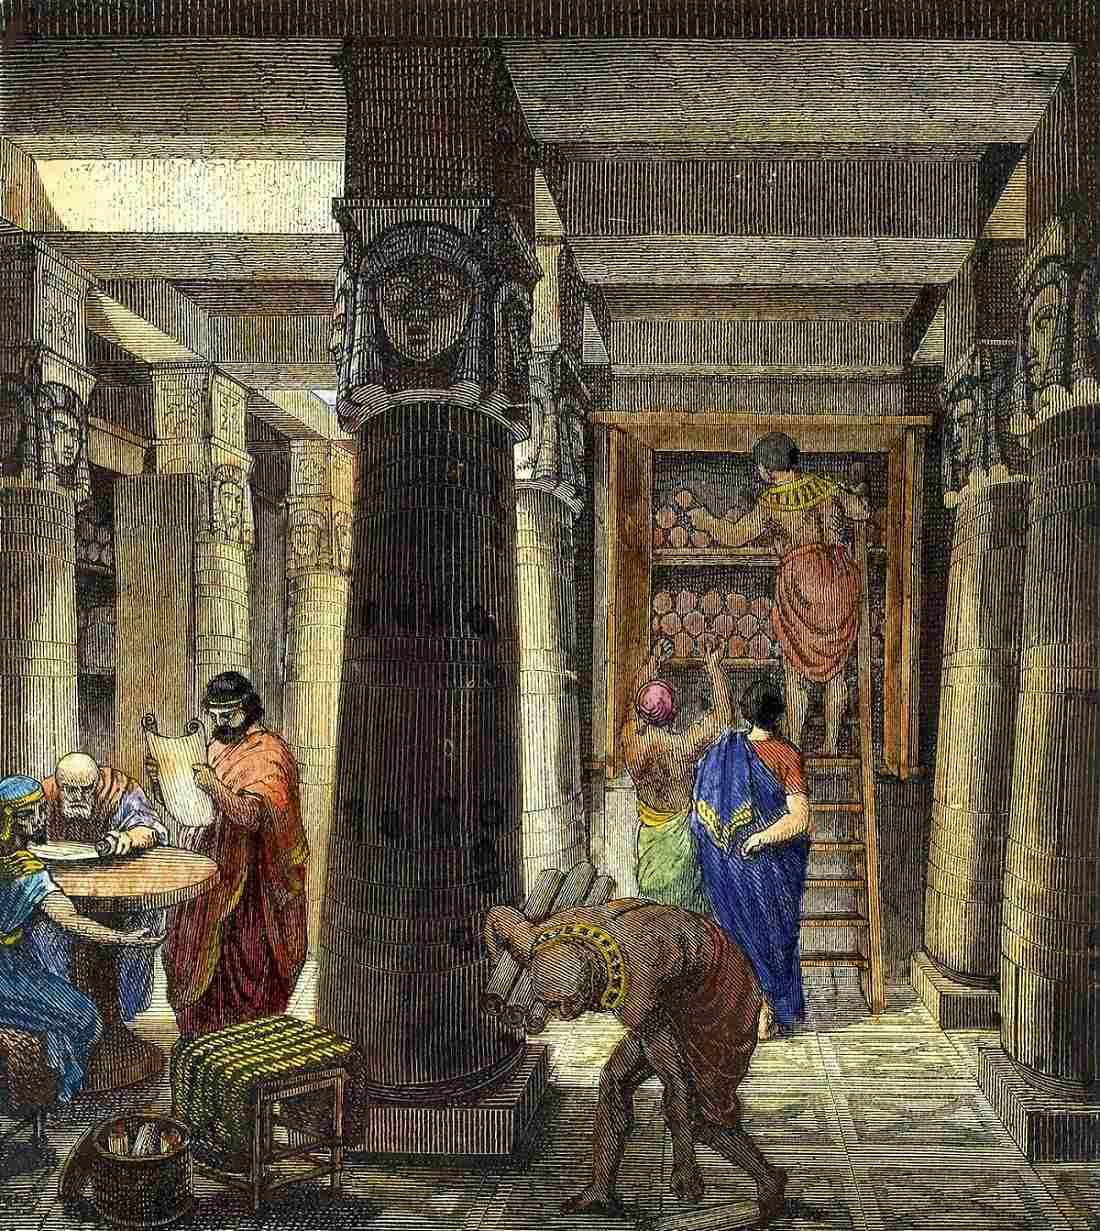 La Biblioteca di Assurbanipal: la più antica biblioteca conosciuta che ha ispirato la Biblioteca di Alessandria 1